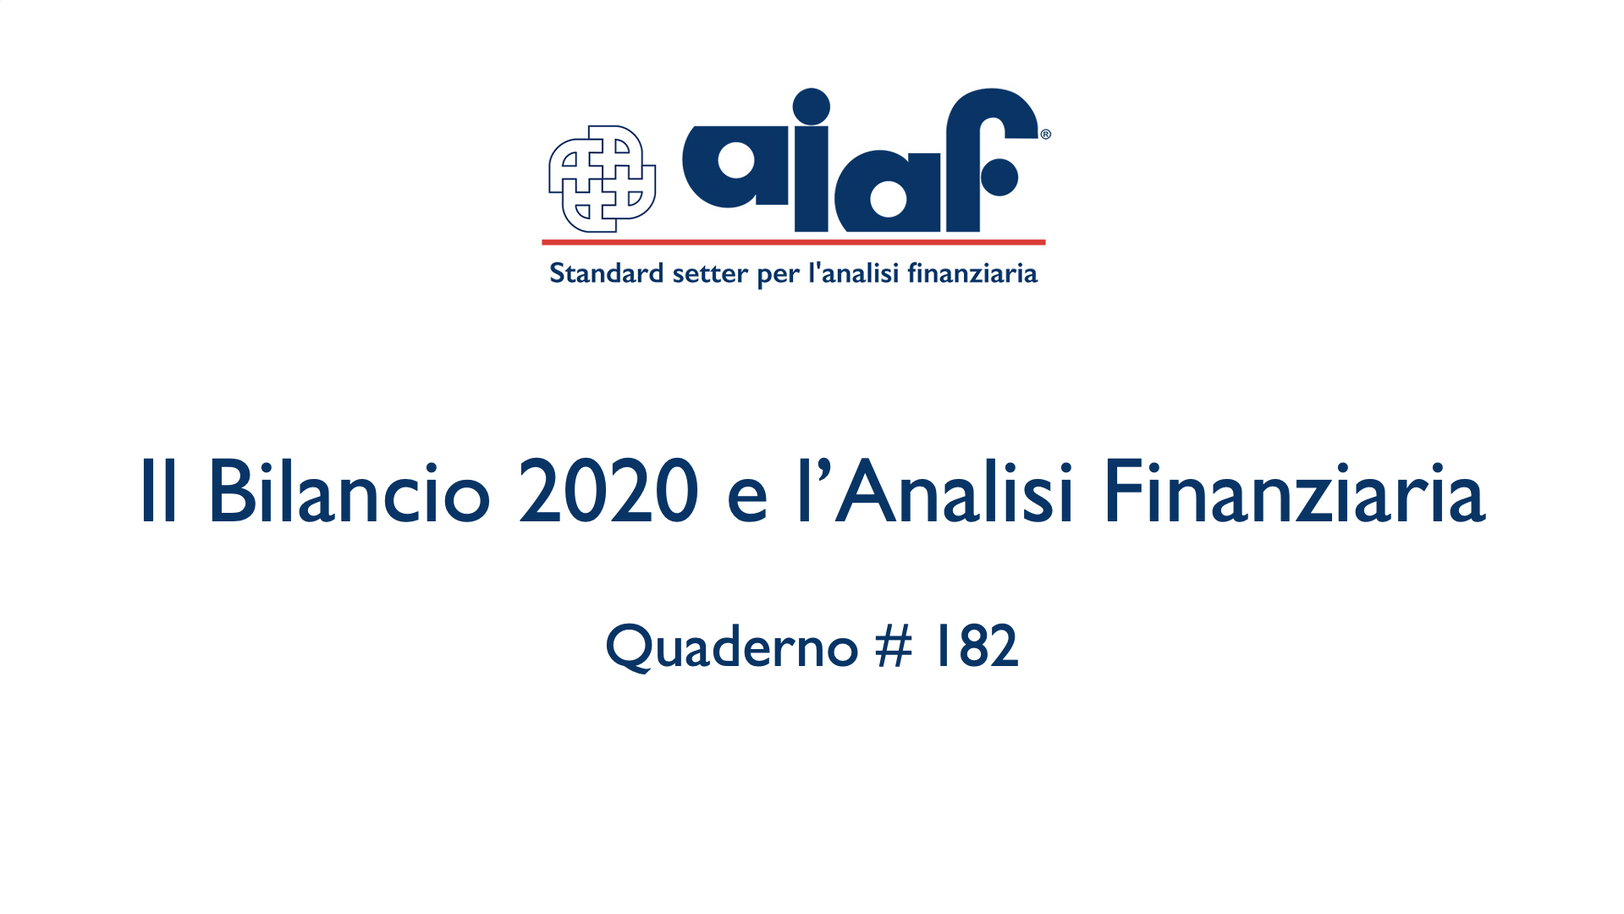 Il Bilancio 2020 e l'analisi finanziaria - Q. #182